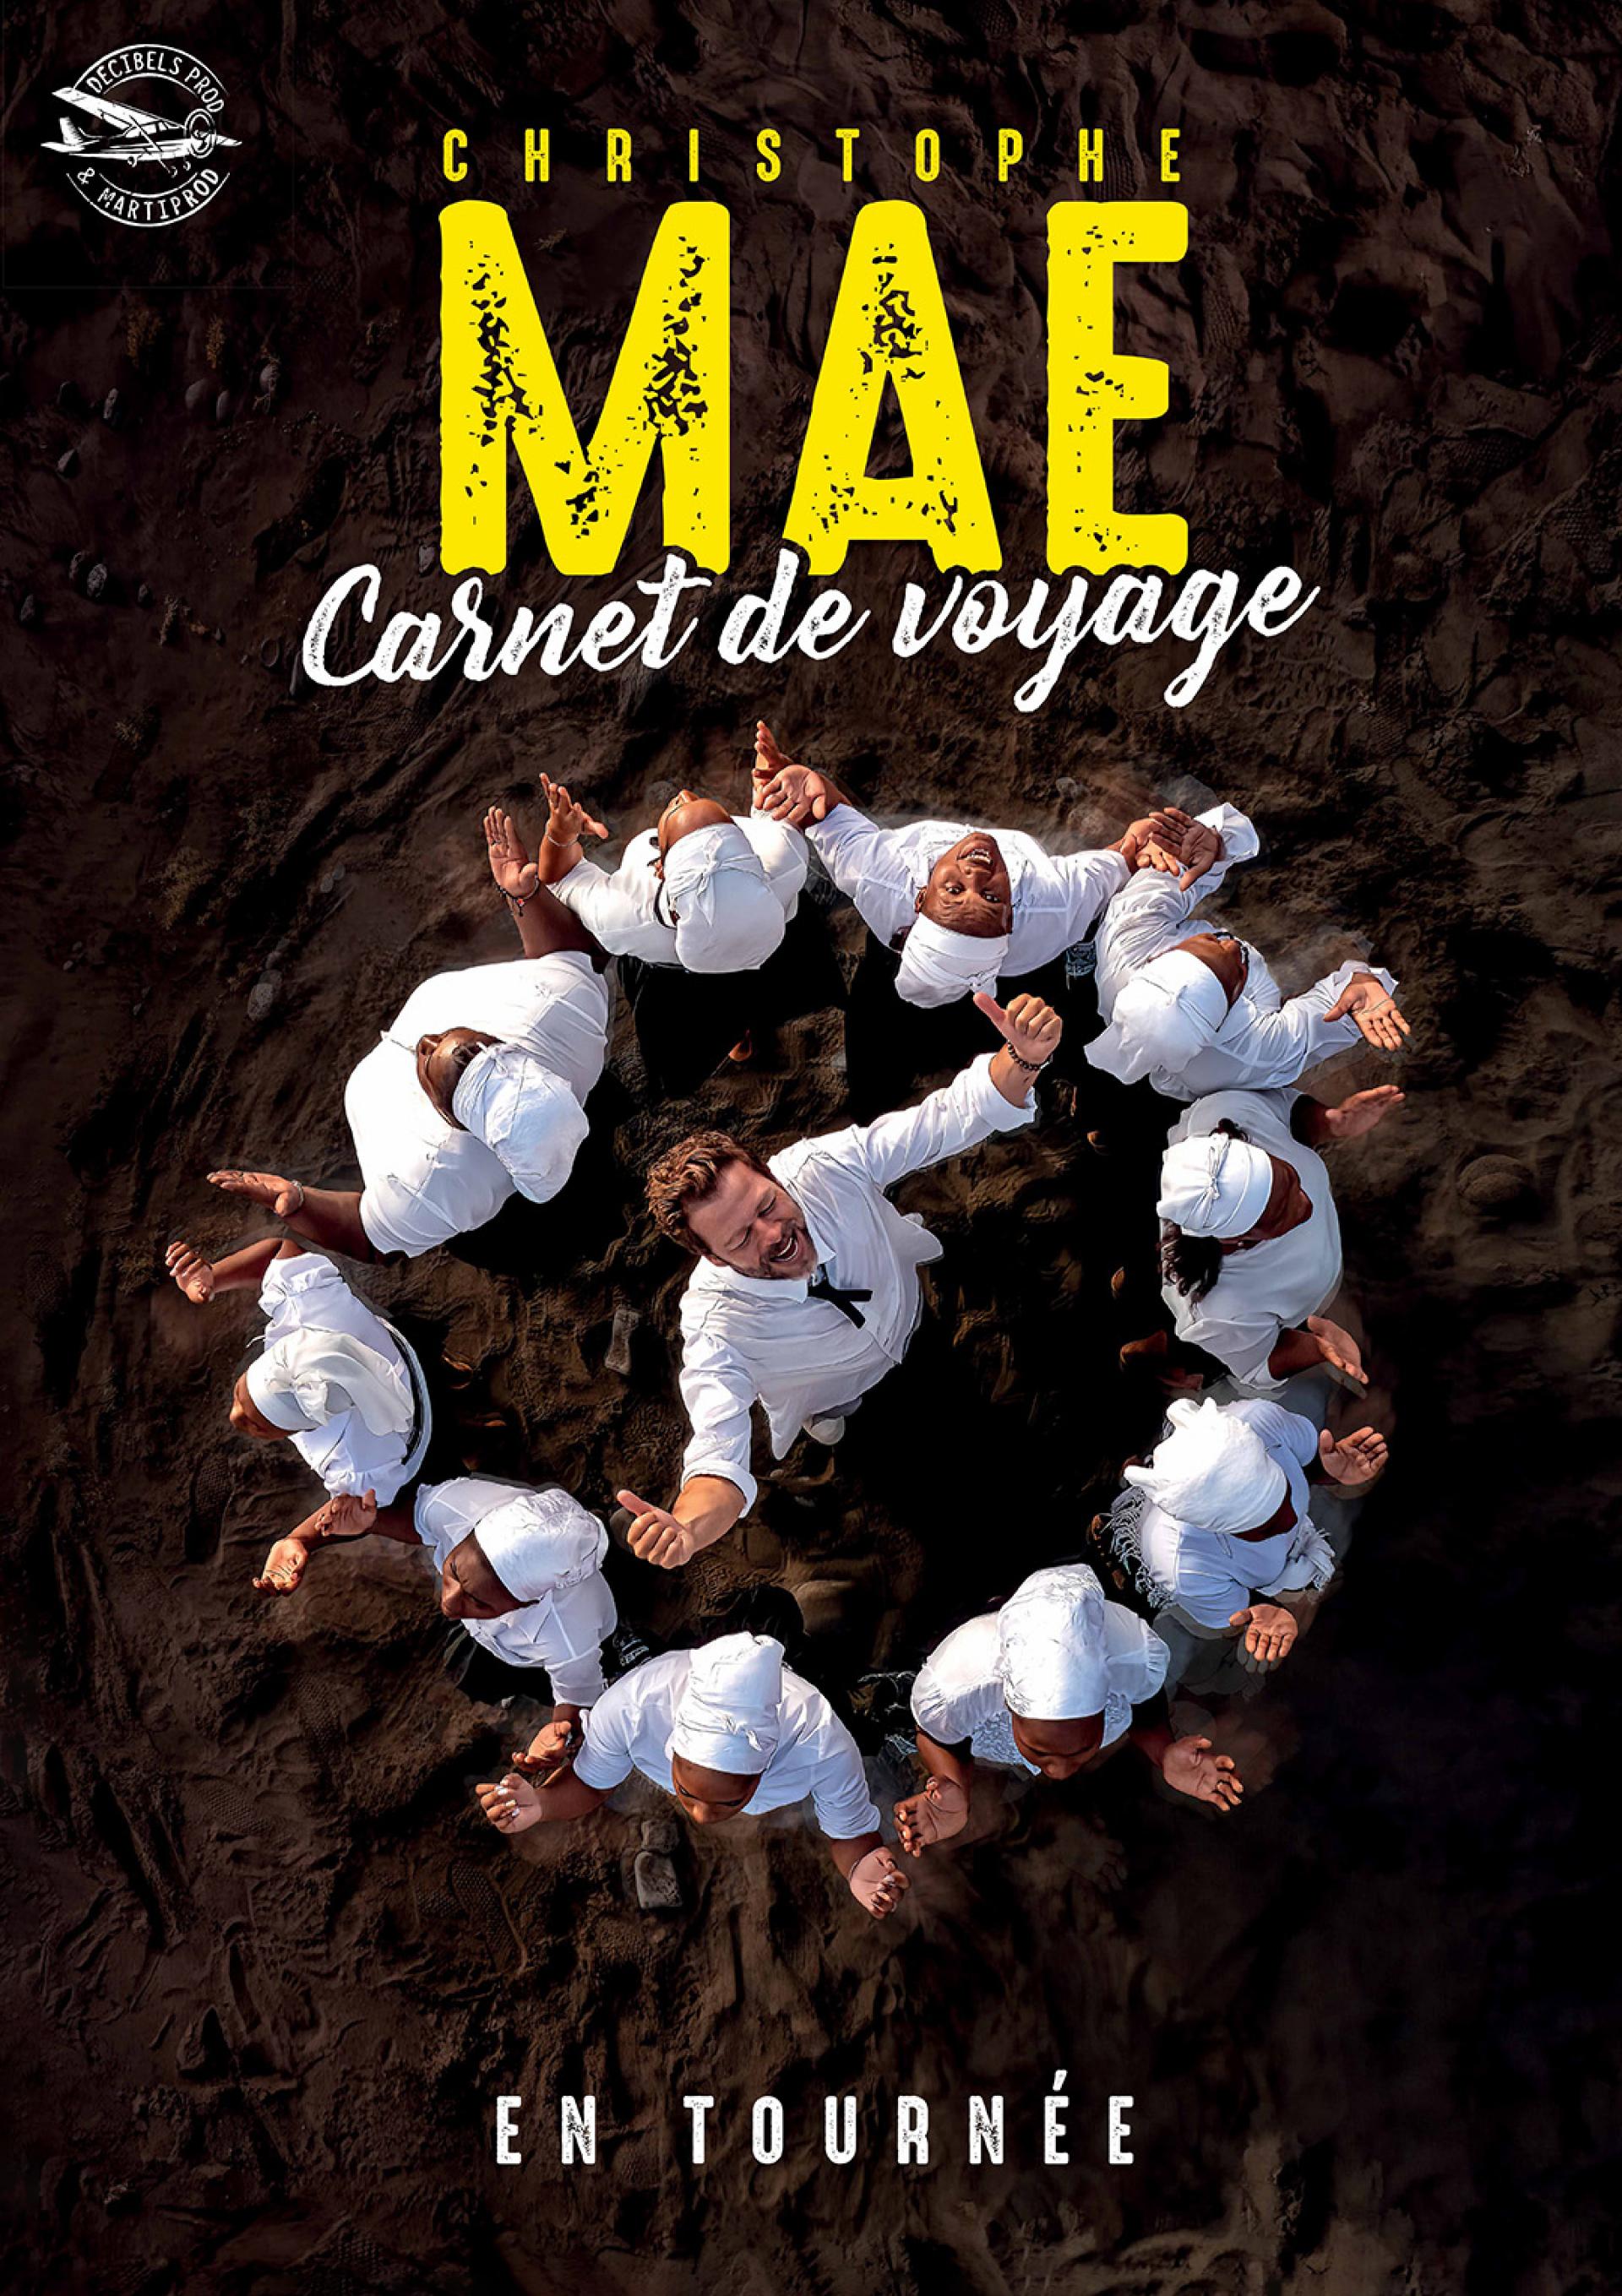 Christophe Maé - Carnet De Voyage in der Theatre Capitole Quebec Tickets